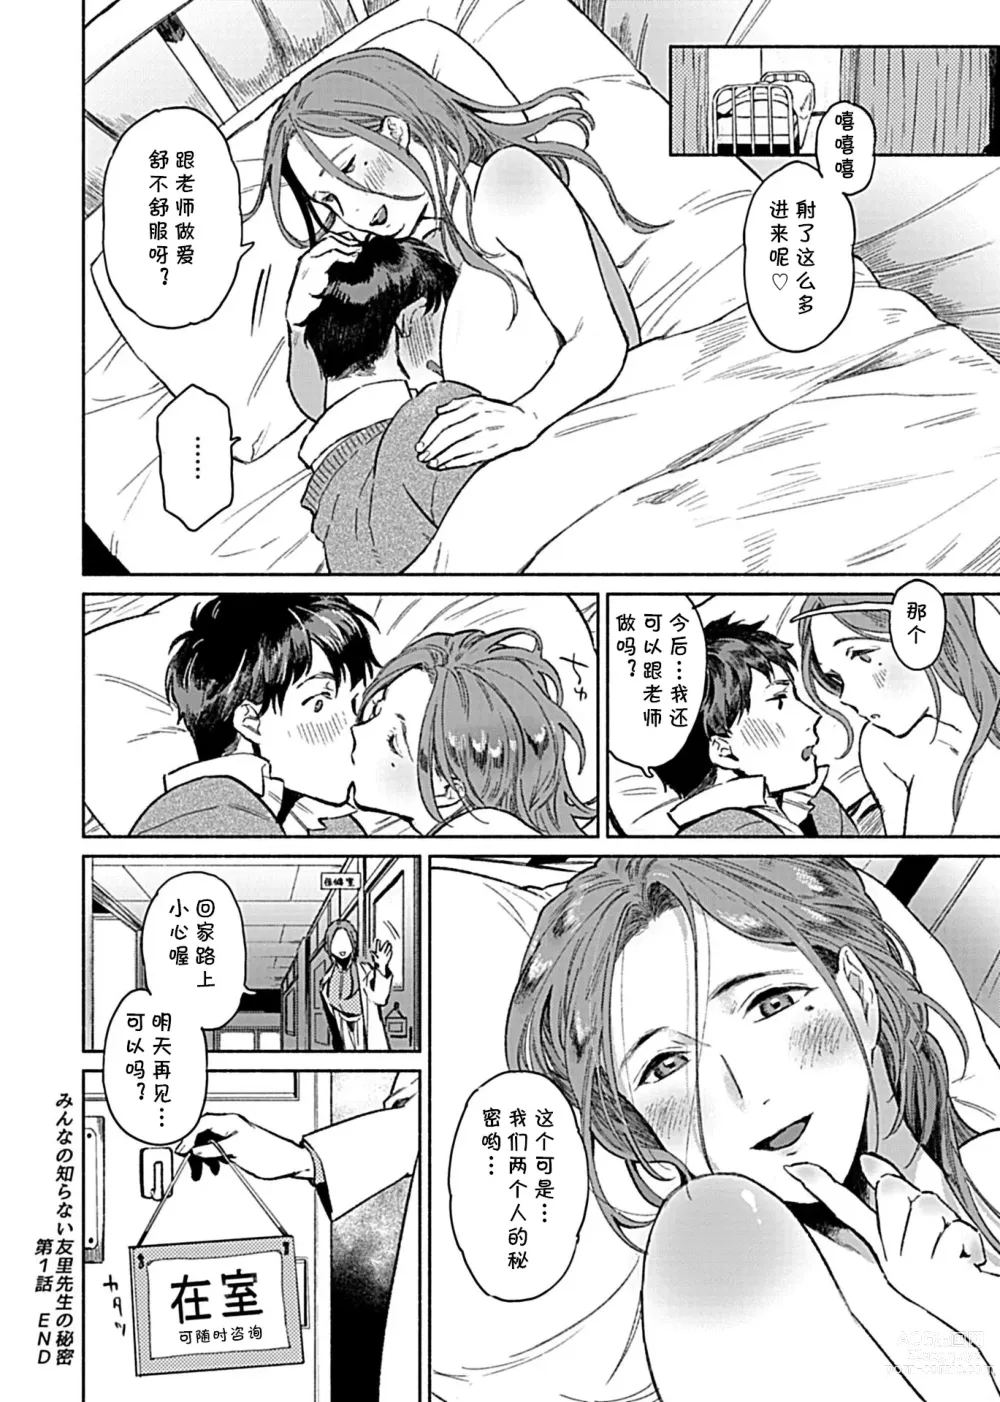 Page 17 of manga Minna no Shiranai Yuri Sensei no Himitsu